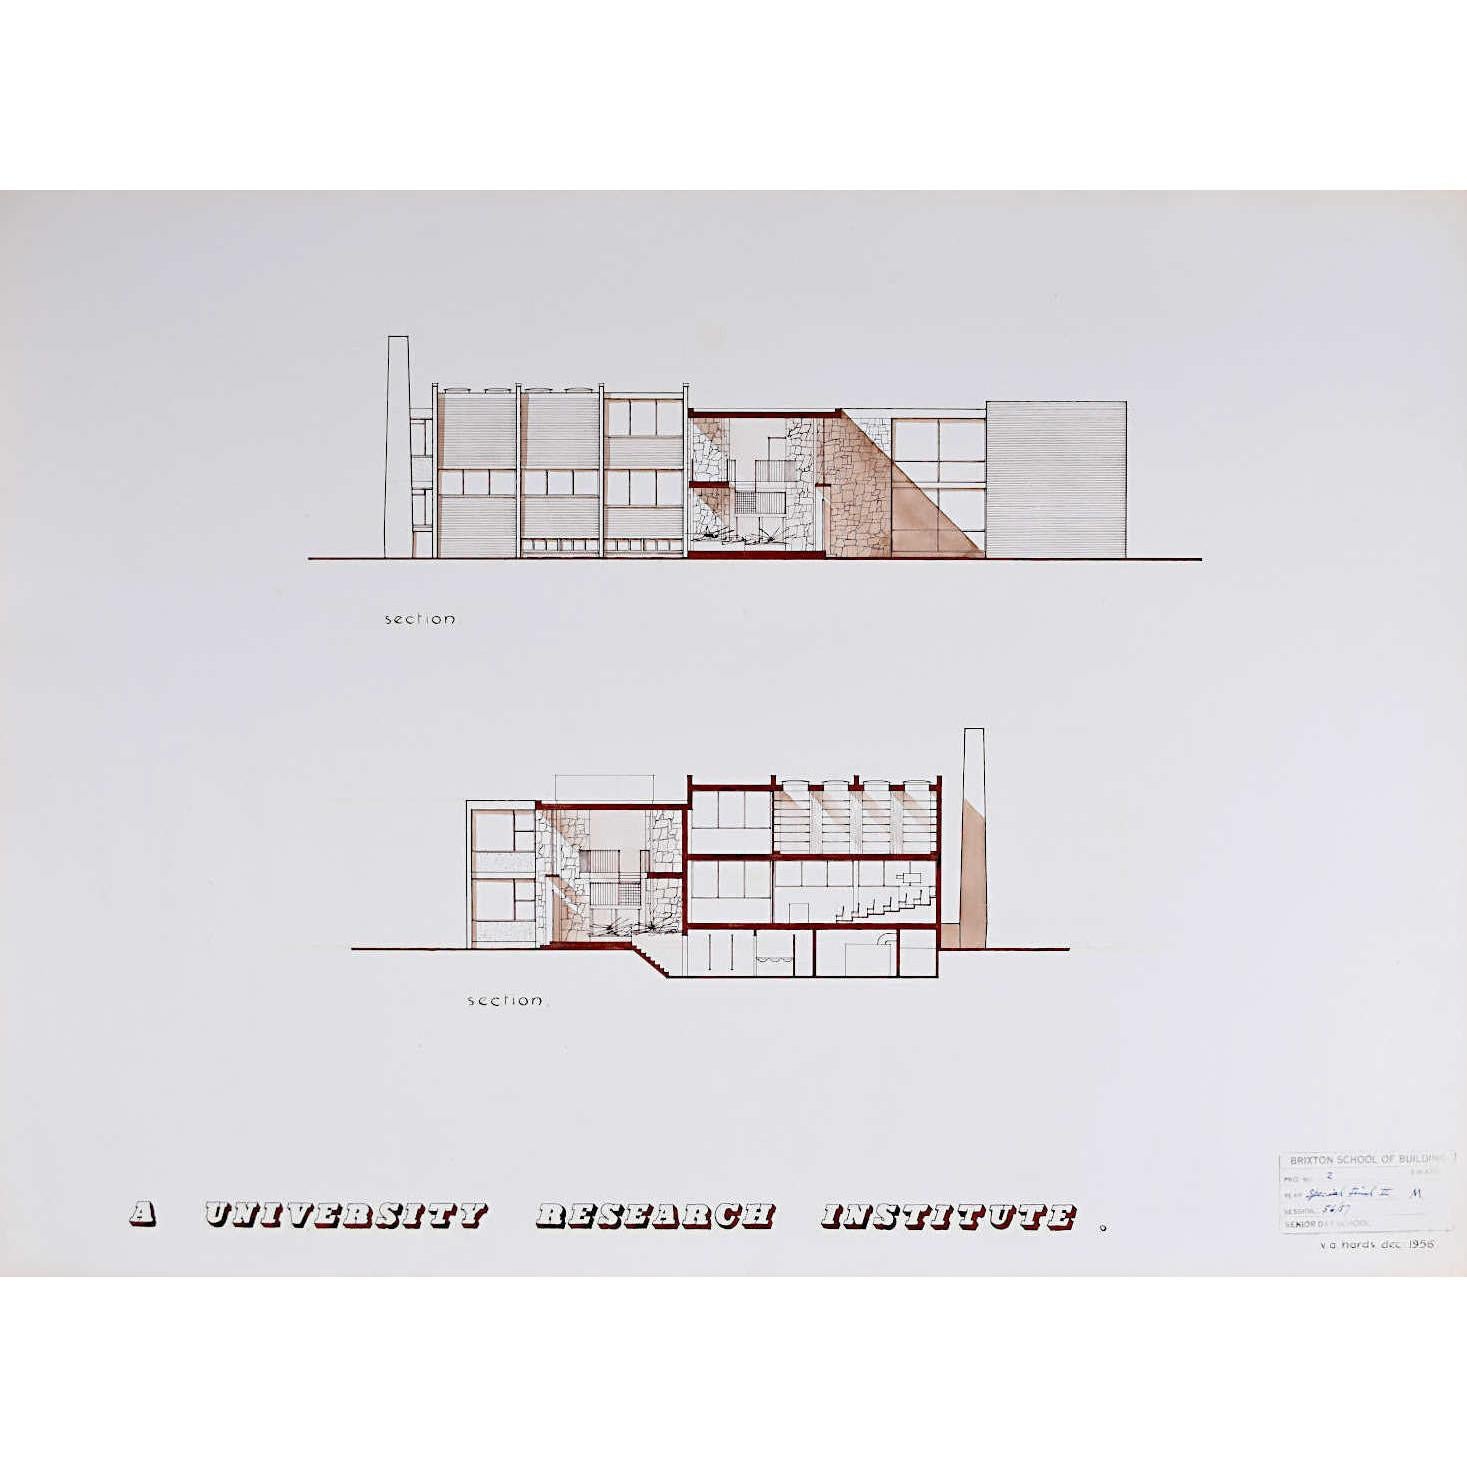 V A Hards Landscape Art – Design für Modernistische brutalistische Architekturzeichnung des Instituts III. aus der Mitte des Jahrhunderts